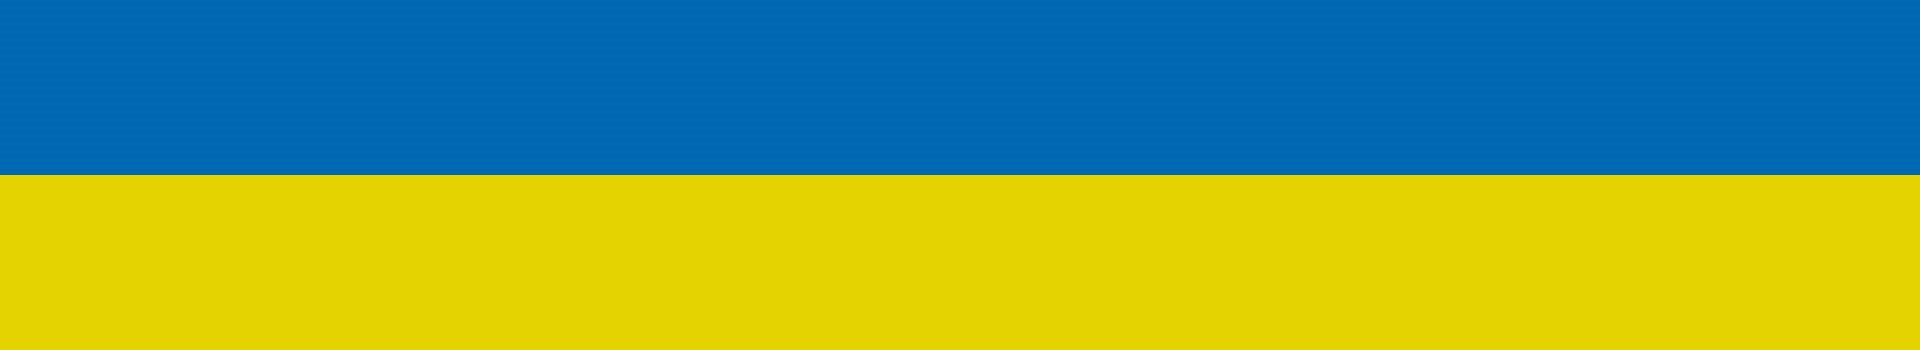 Farben der ukrainischen Flagge